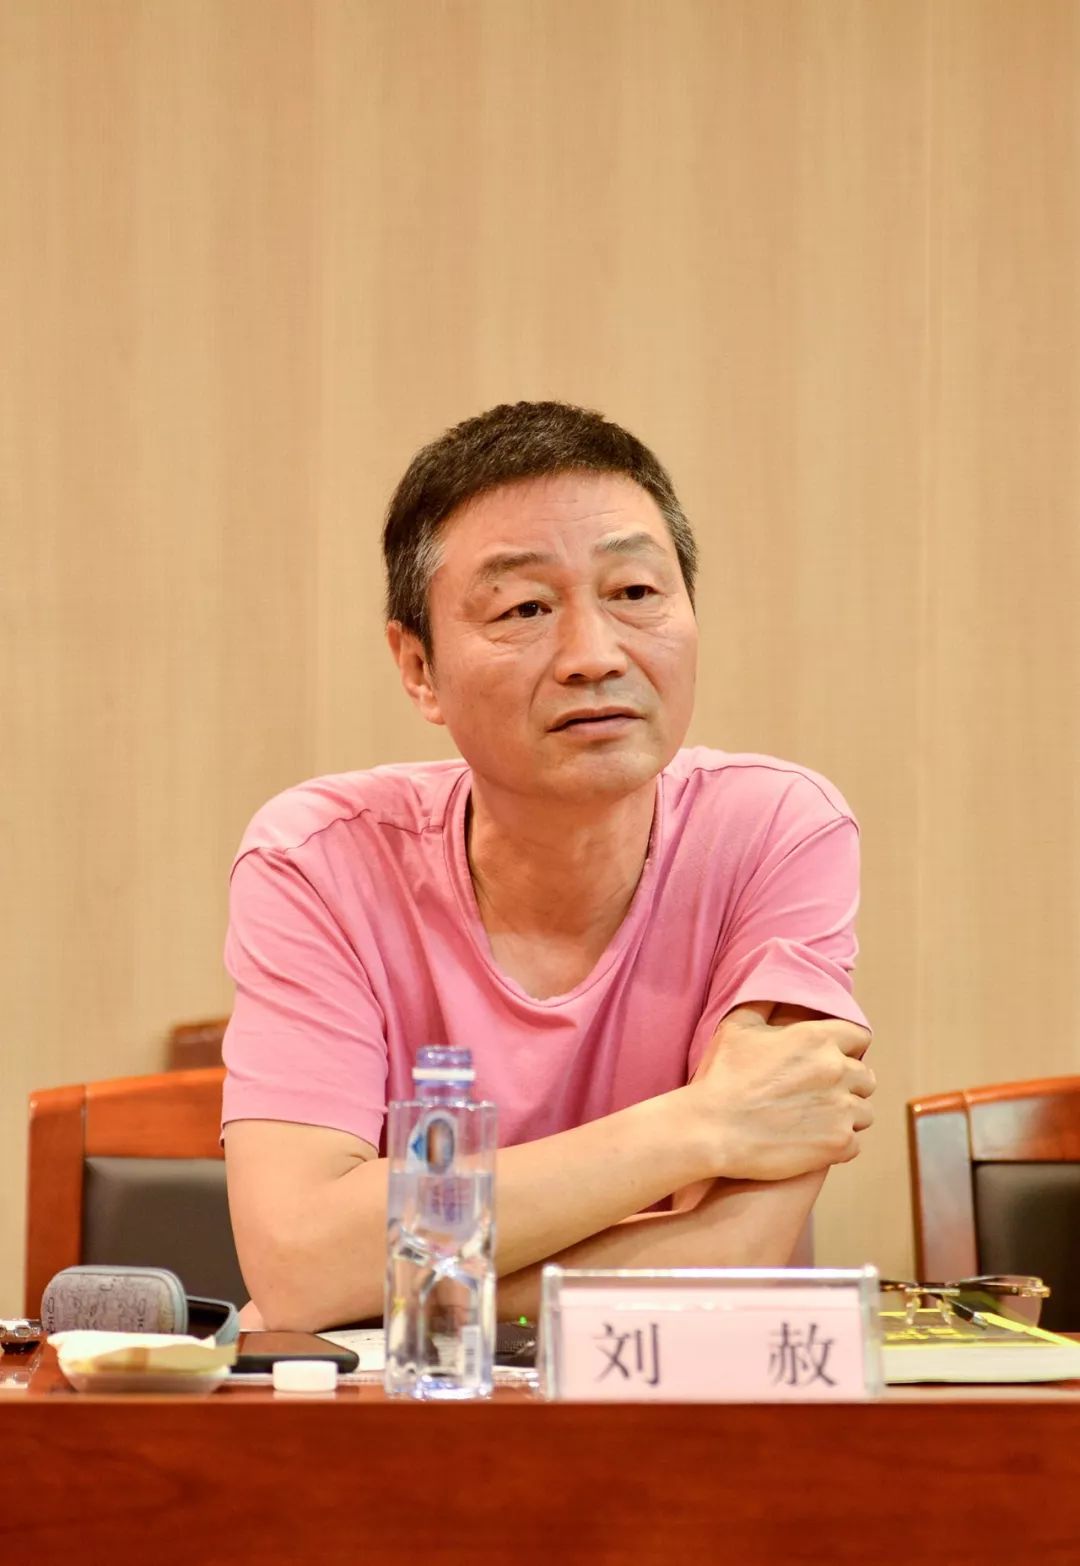 江苏省美协副主席,南京师范大学美术学院院长刘赦在研讨会发言